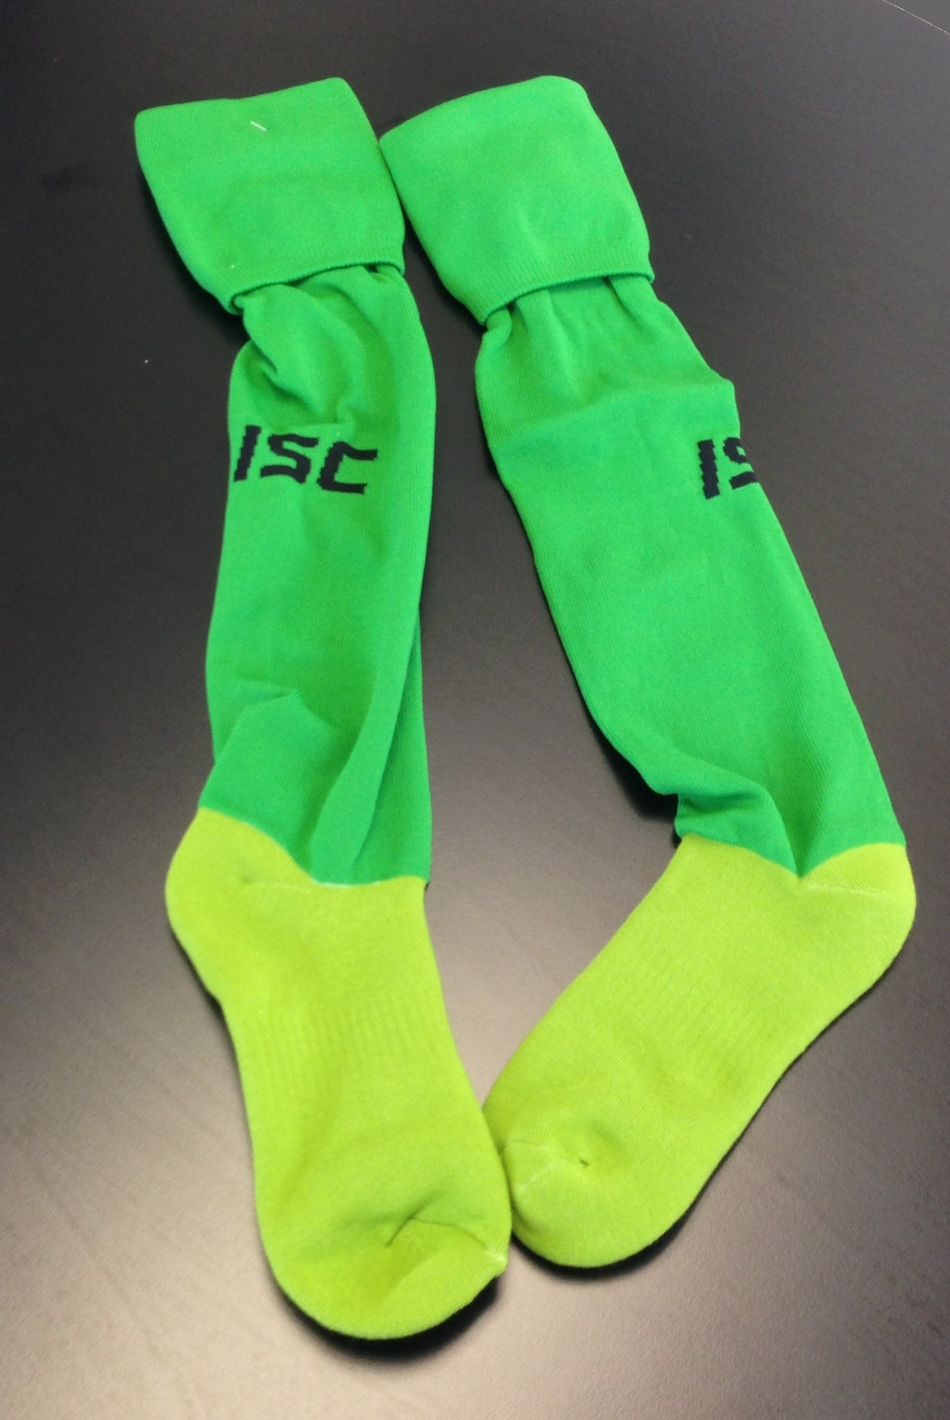 Wigan's green socks.